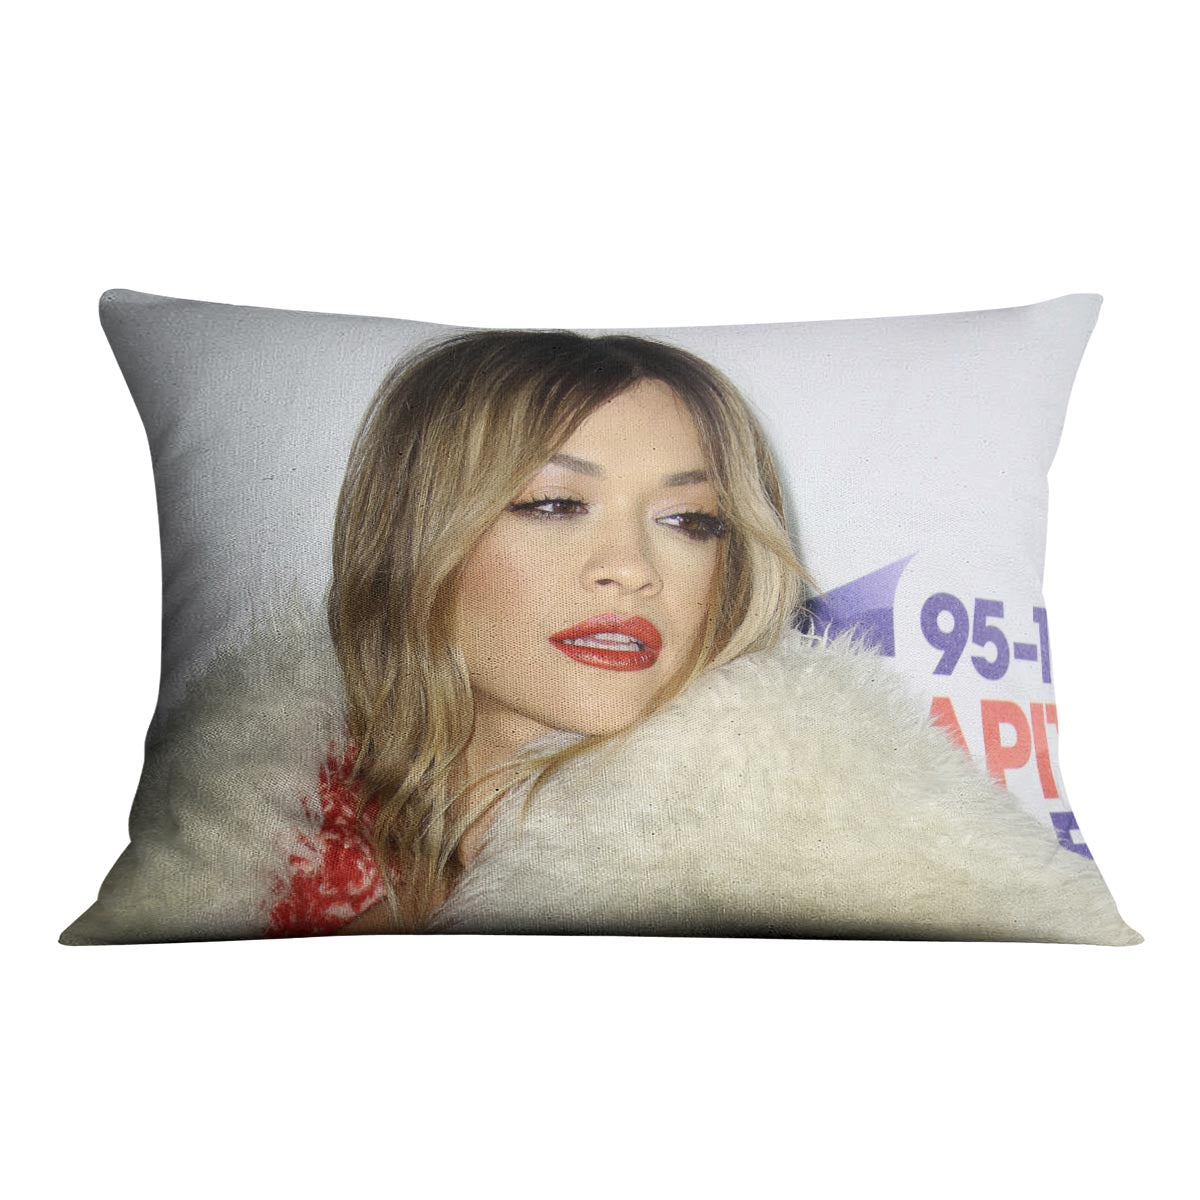 Rita Ora At the Awards Cushion